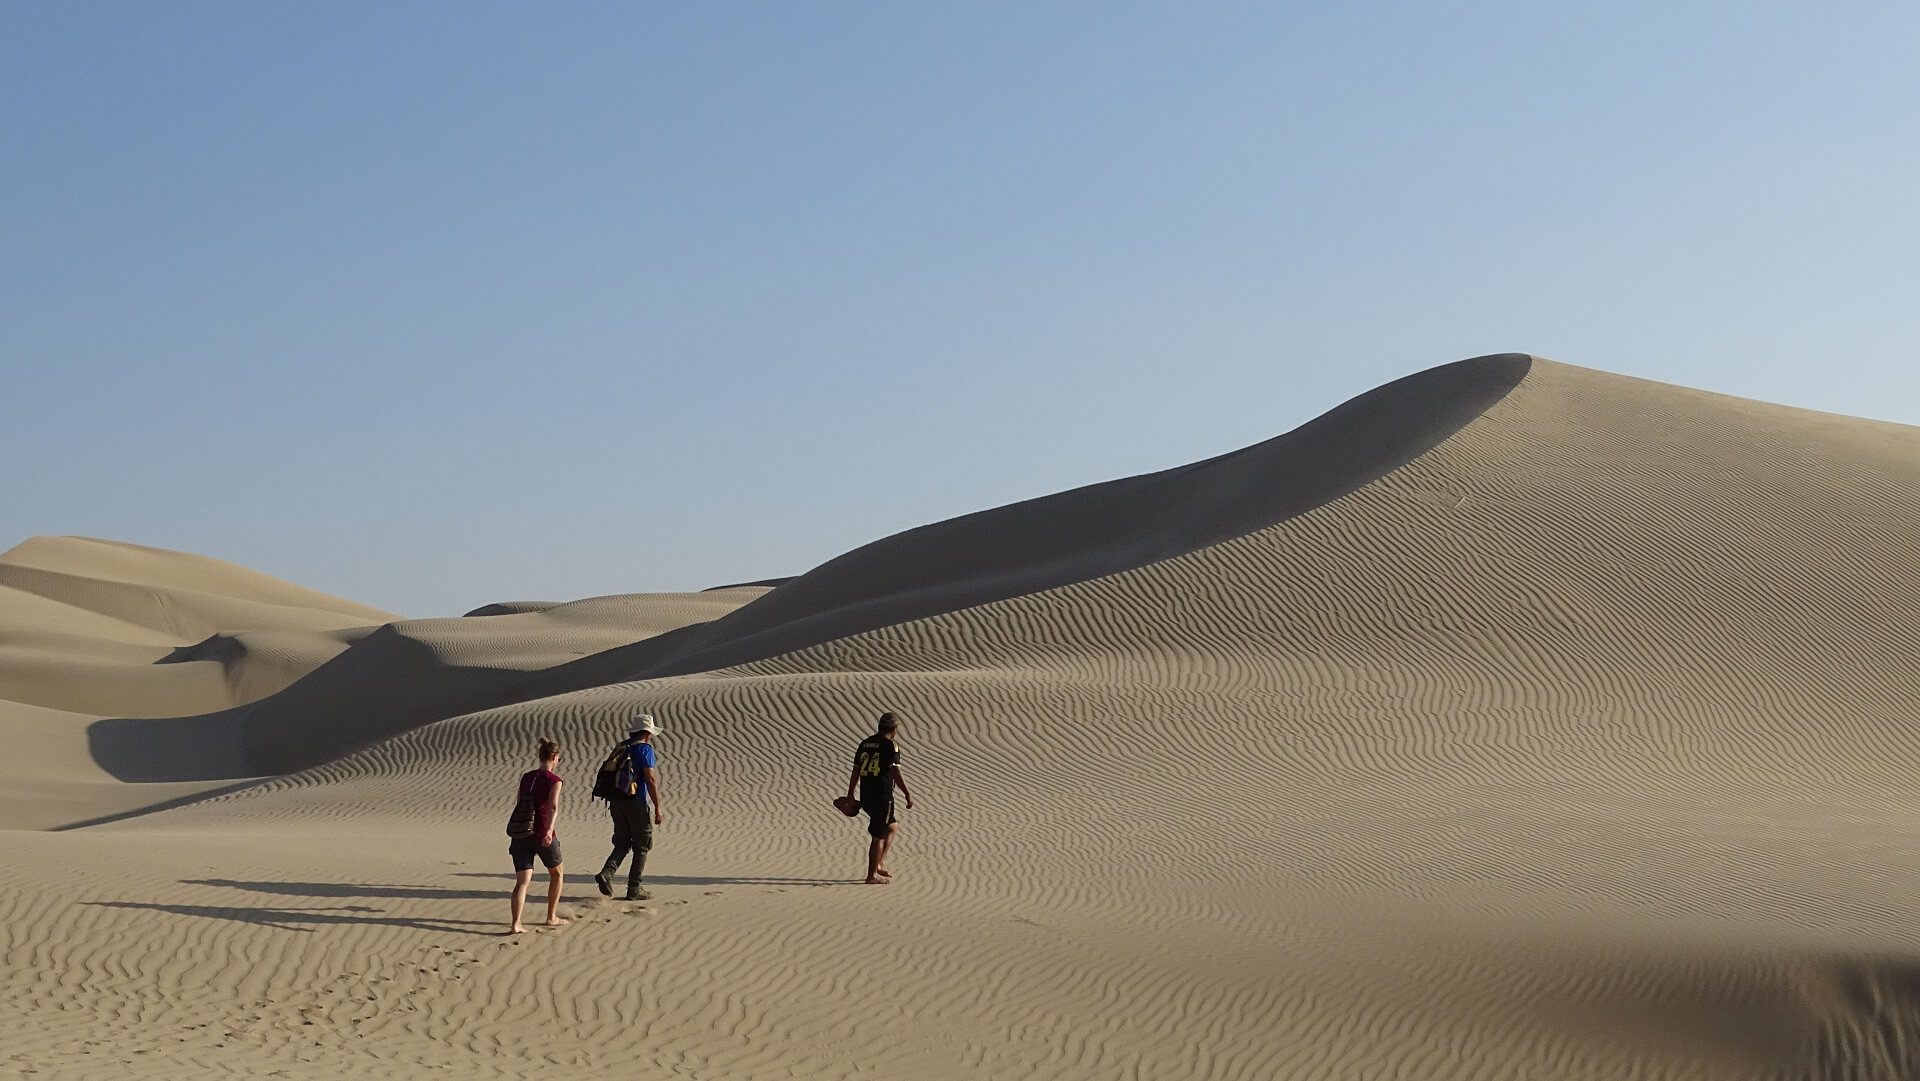 Agnes ascending a dune in the desert